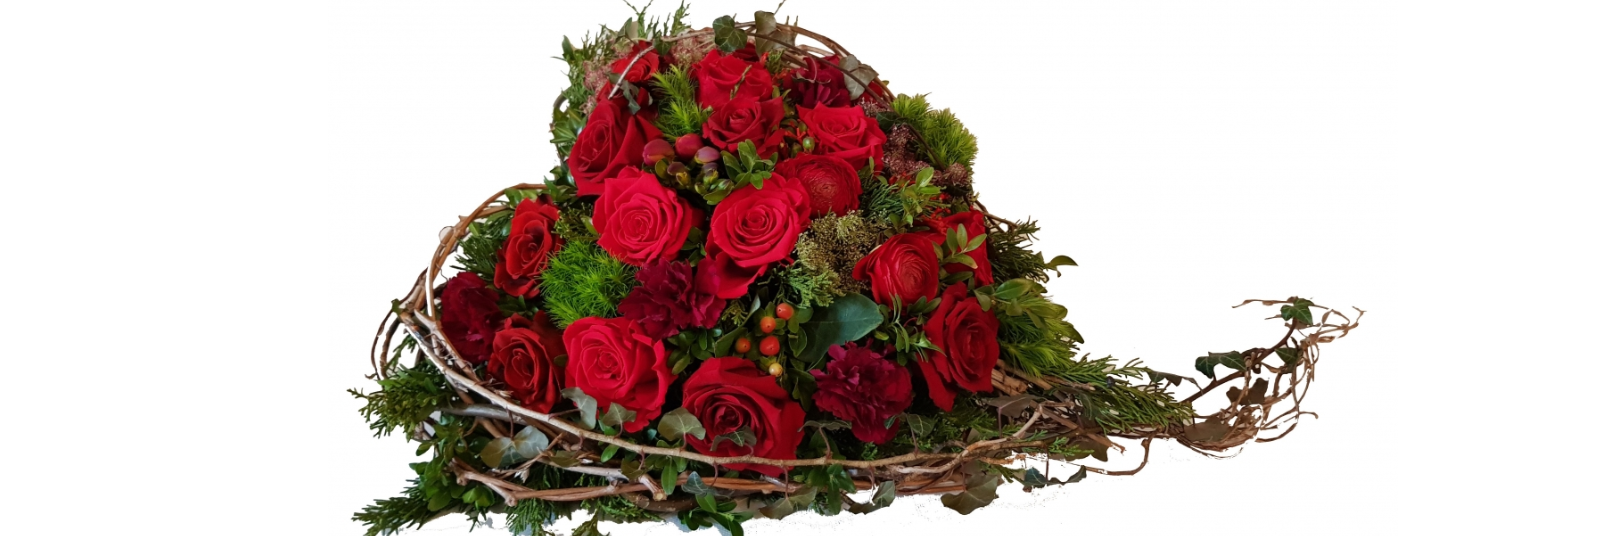 ,Letzte Reise modernes Grabgesteck in weiß grün bestellen und mit frischen Blumen senden Größe 40 Euro 